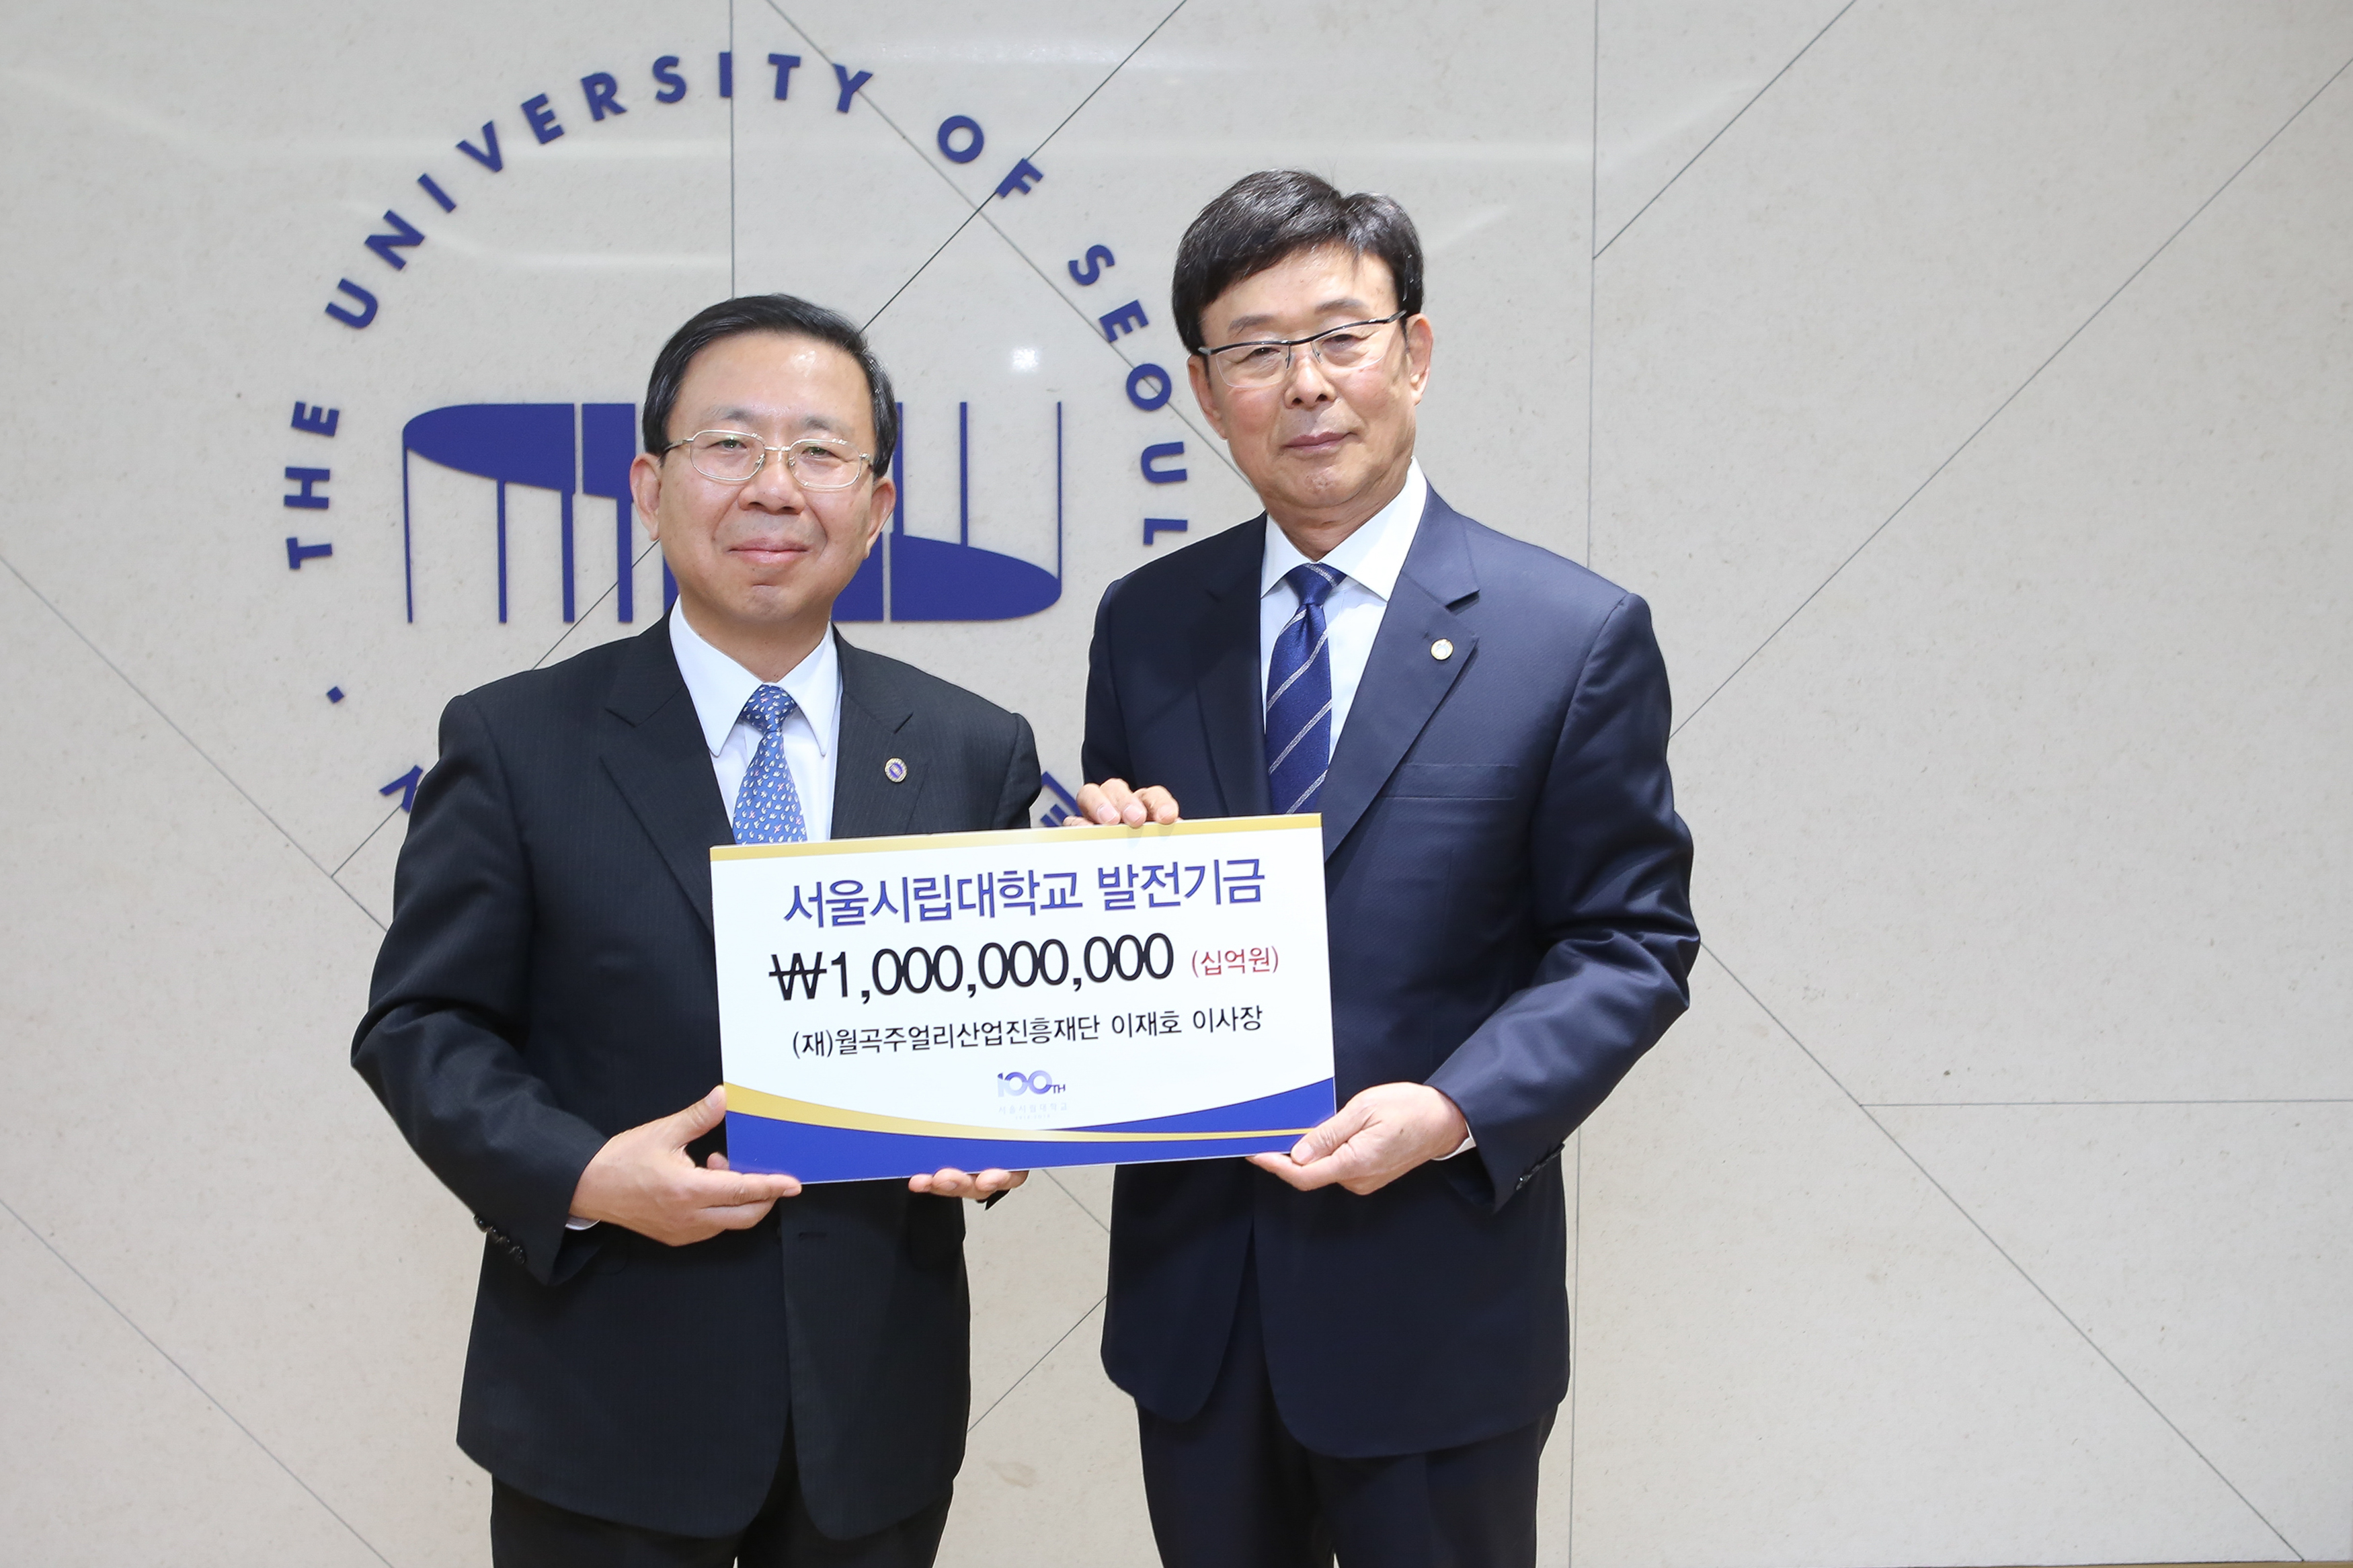 (재)월곡주얼리산업진흥재단 이재호 이사장, 서울시립대학교 학생들의 발전을 위해 10억원 기부